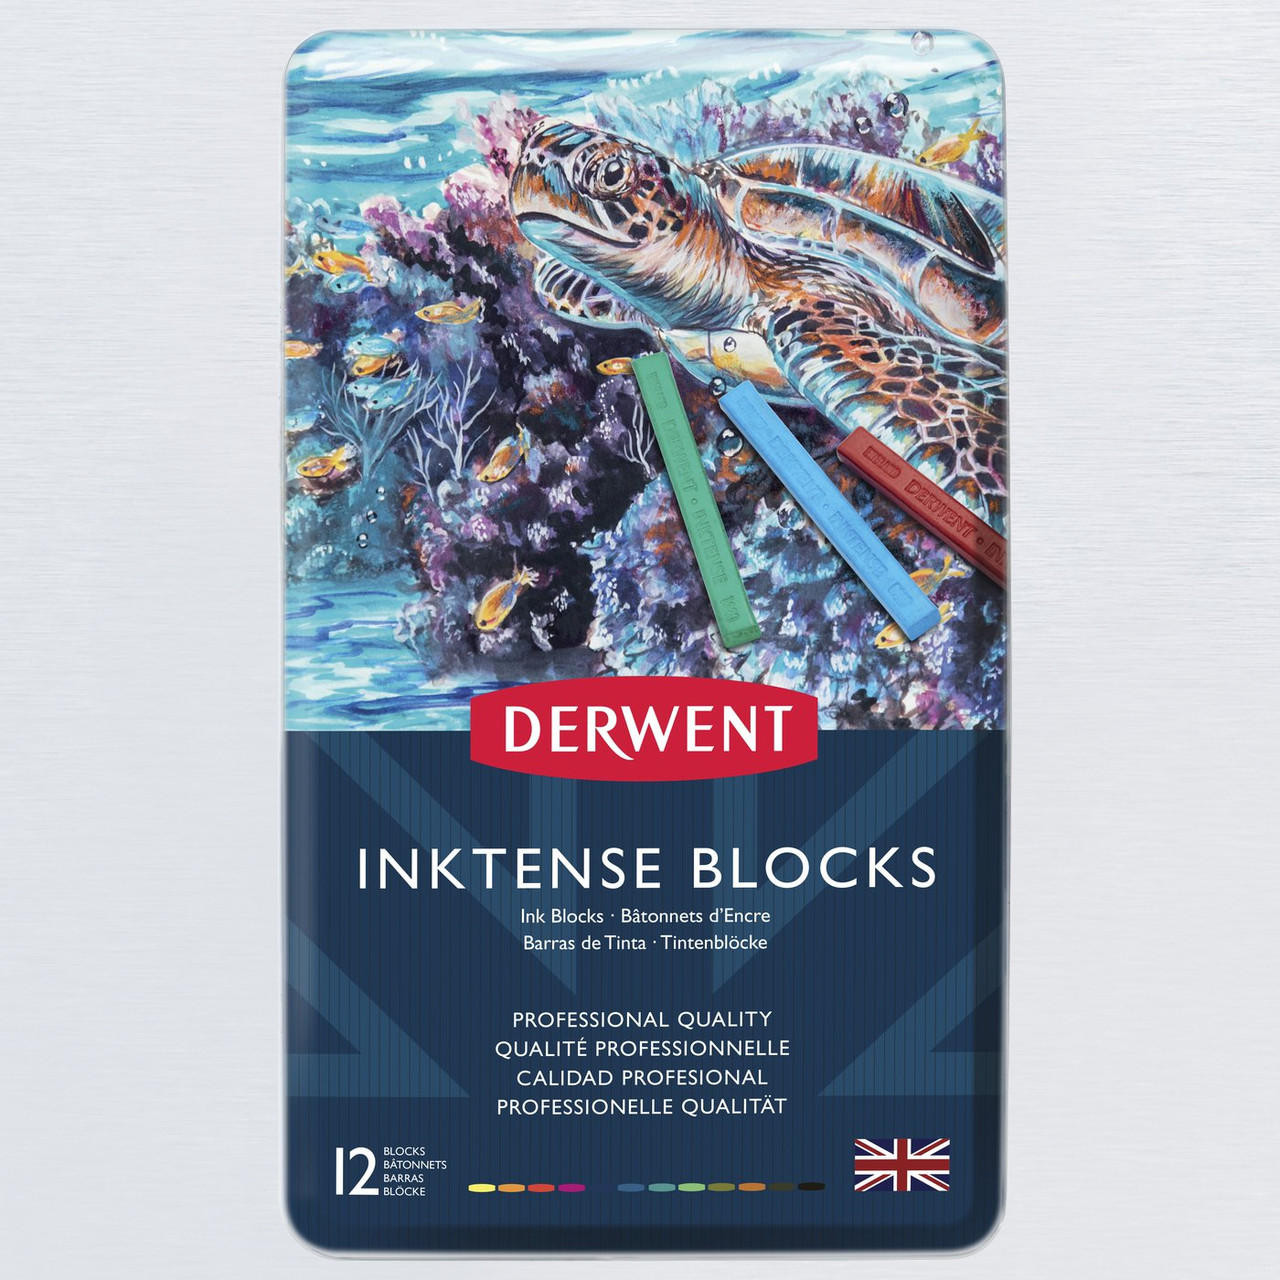 Derwent Inktense Block Tin Set of 12